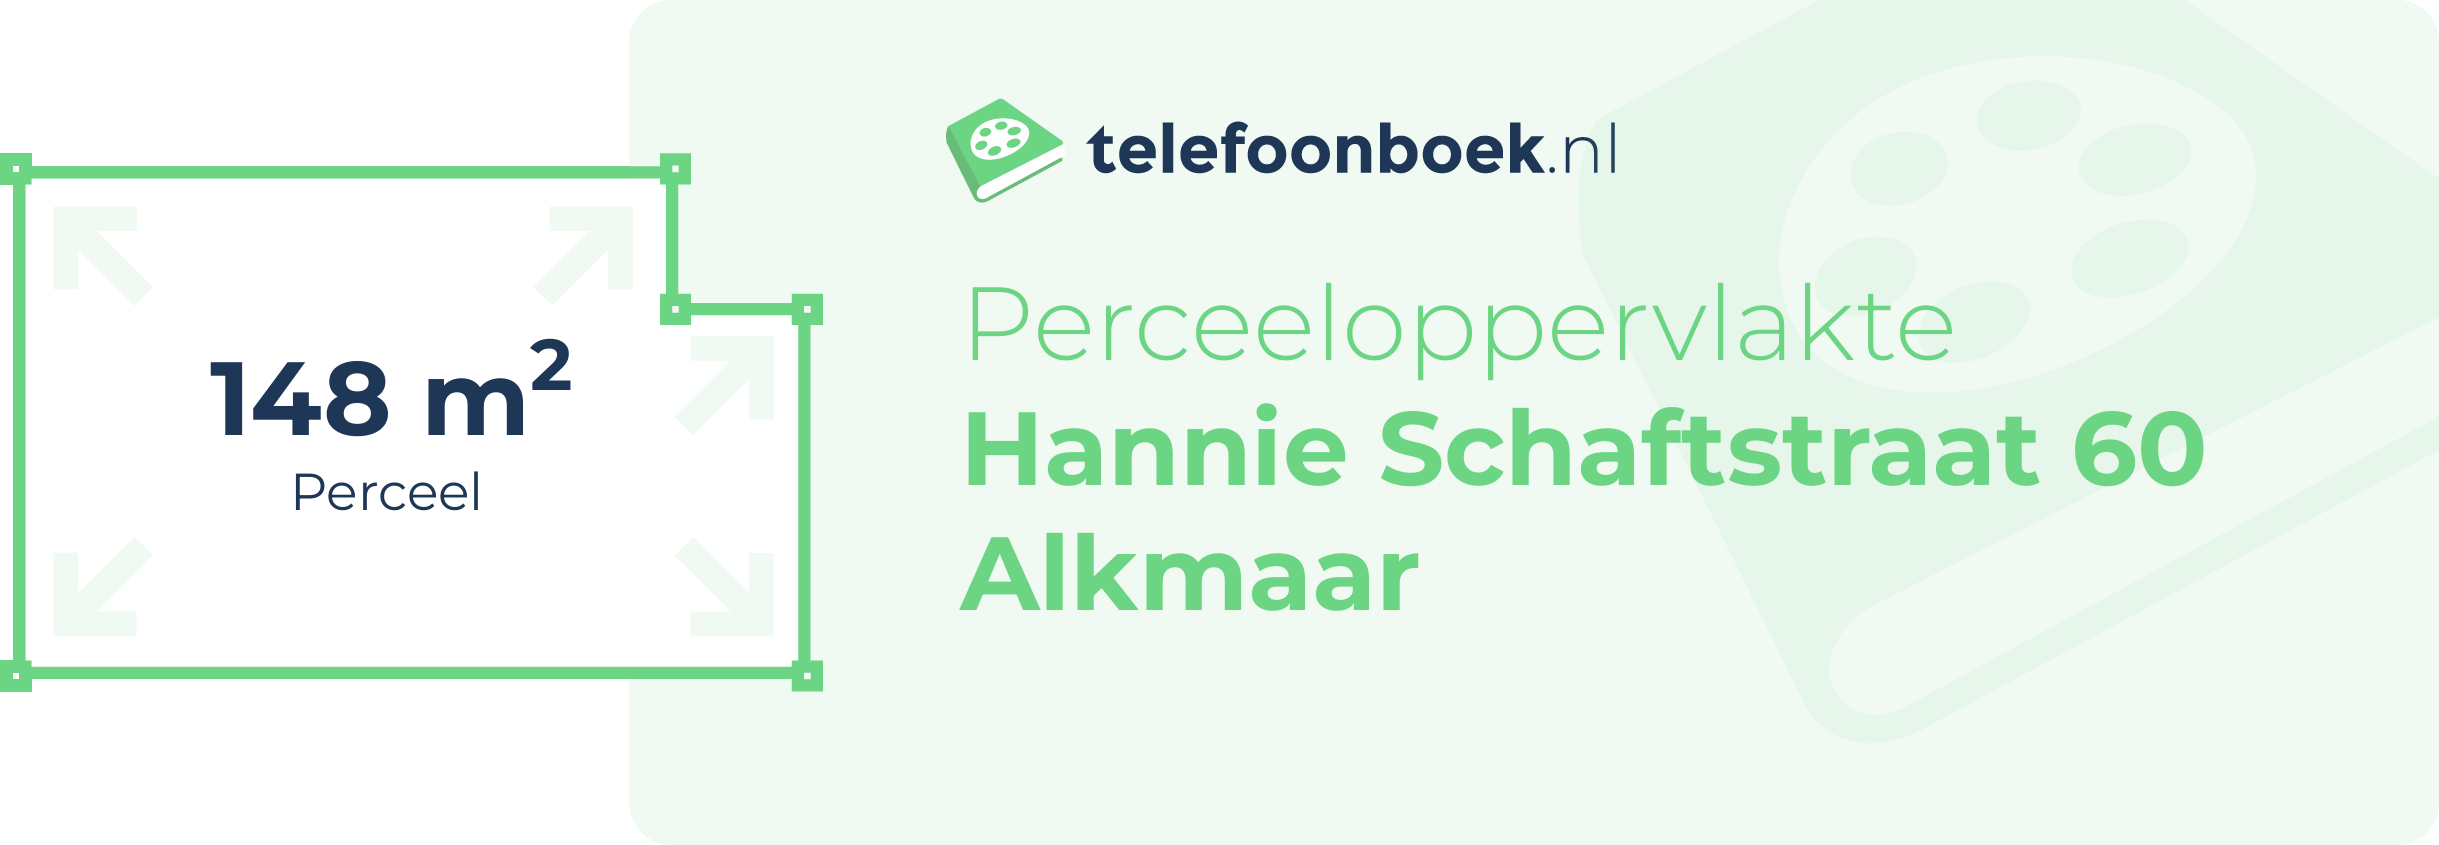 Perceeloppervlakte Hannie Schaftstraat 60 Alkmaar